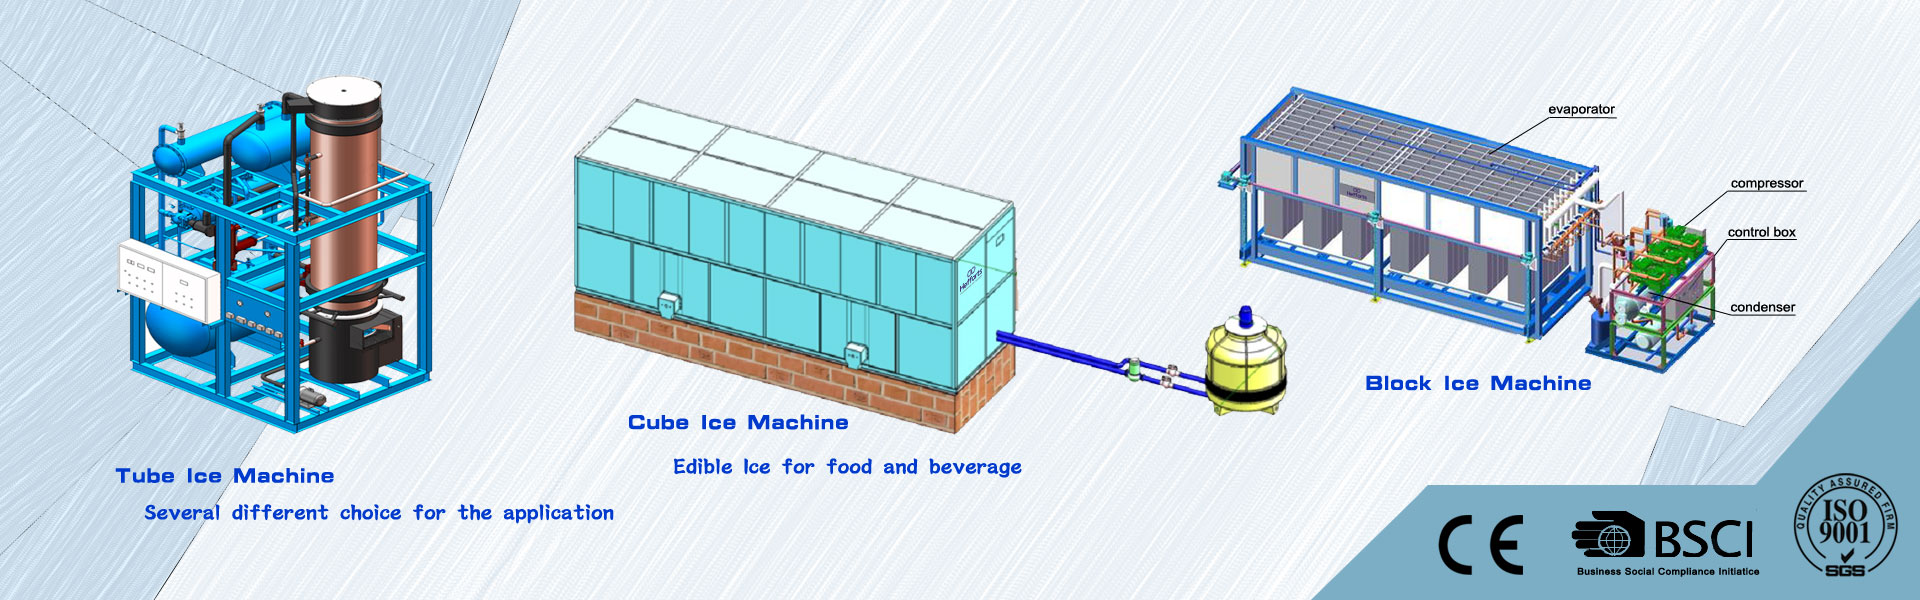 jääkone, jääpalakone, kylmähuone,Guangzhou Hefforts Refrigeration Equipment Co.,Ltd.